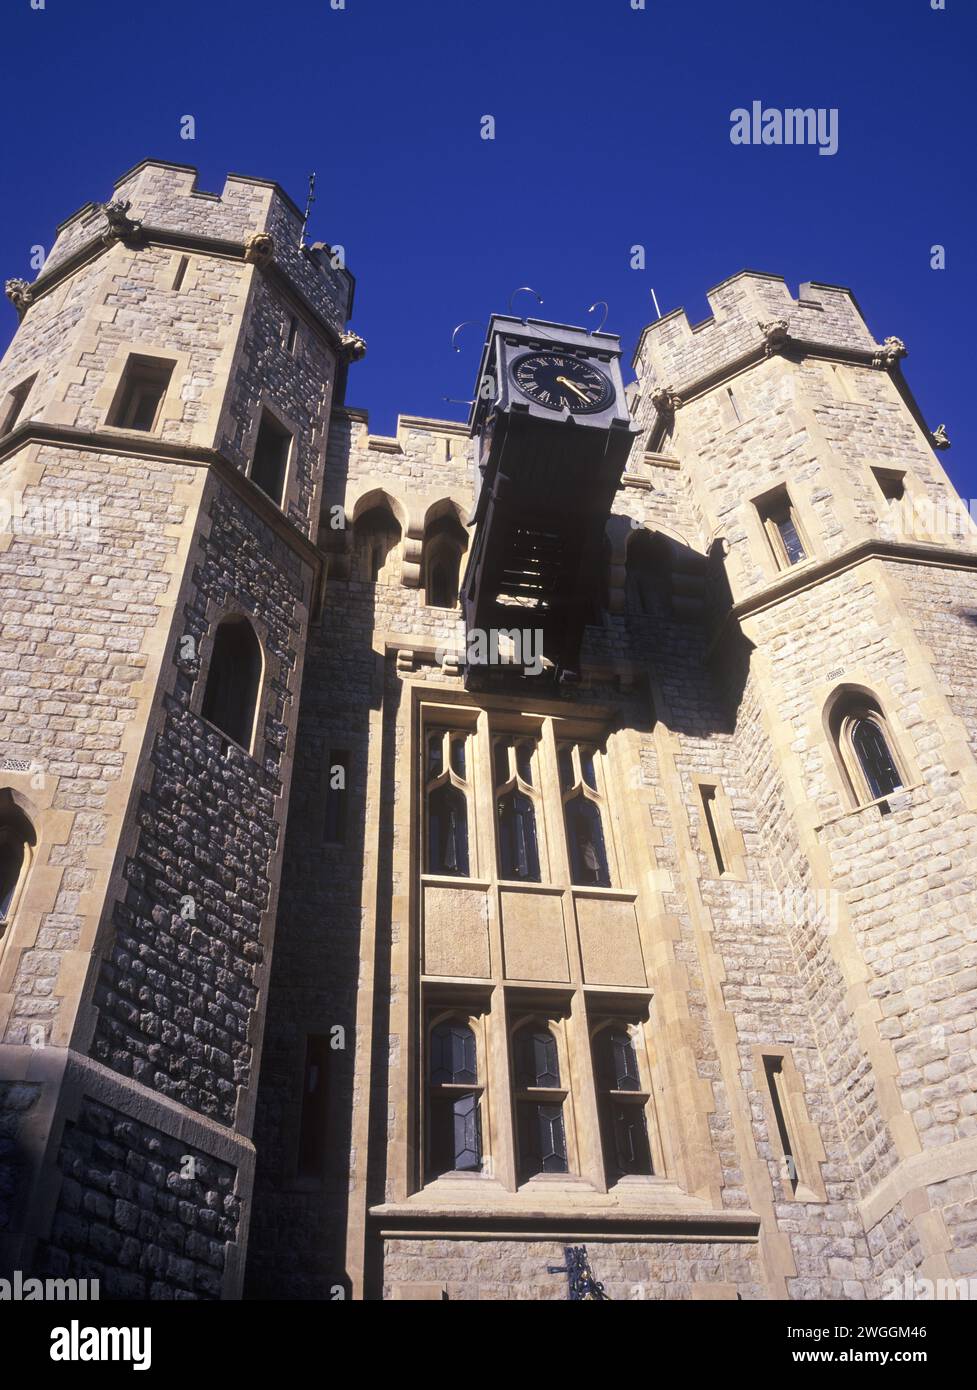 Regno Unito, Londra, il complesso della Torre di Londra, la caserma (waterloo Block) che custodisce i gioielli della corona. Foto Stock